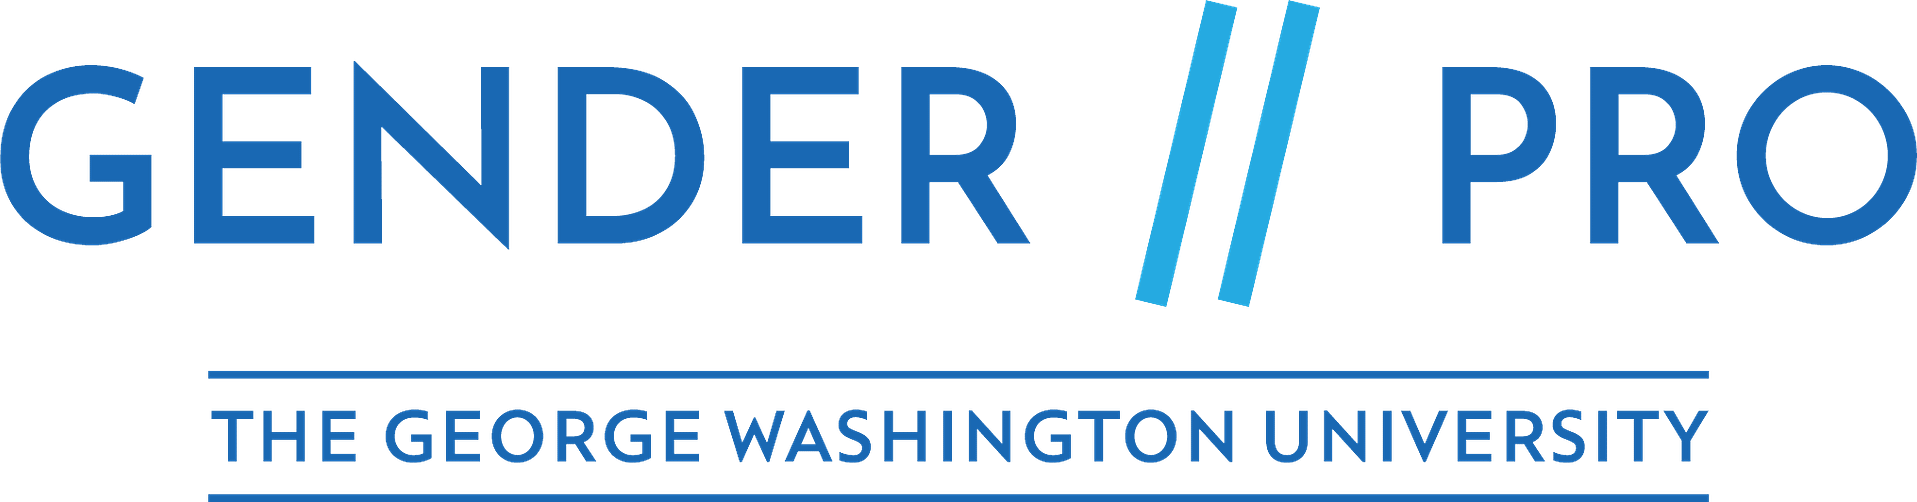 Gender Pro Logo The George Washington University